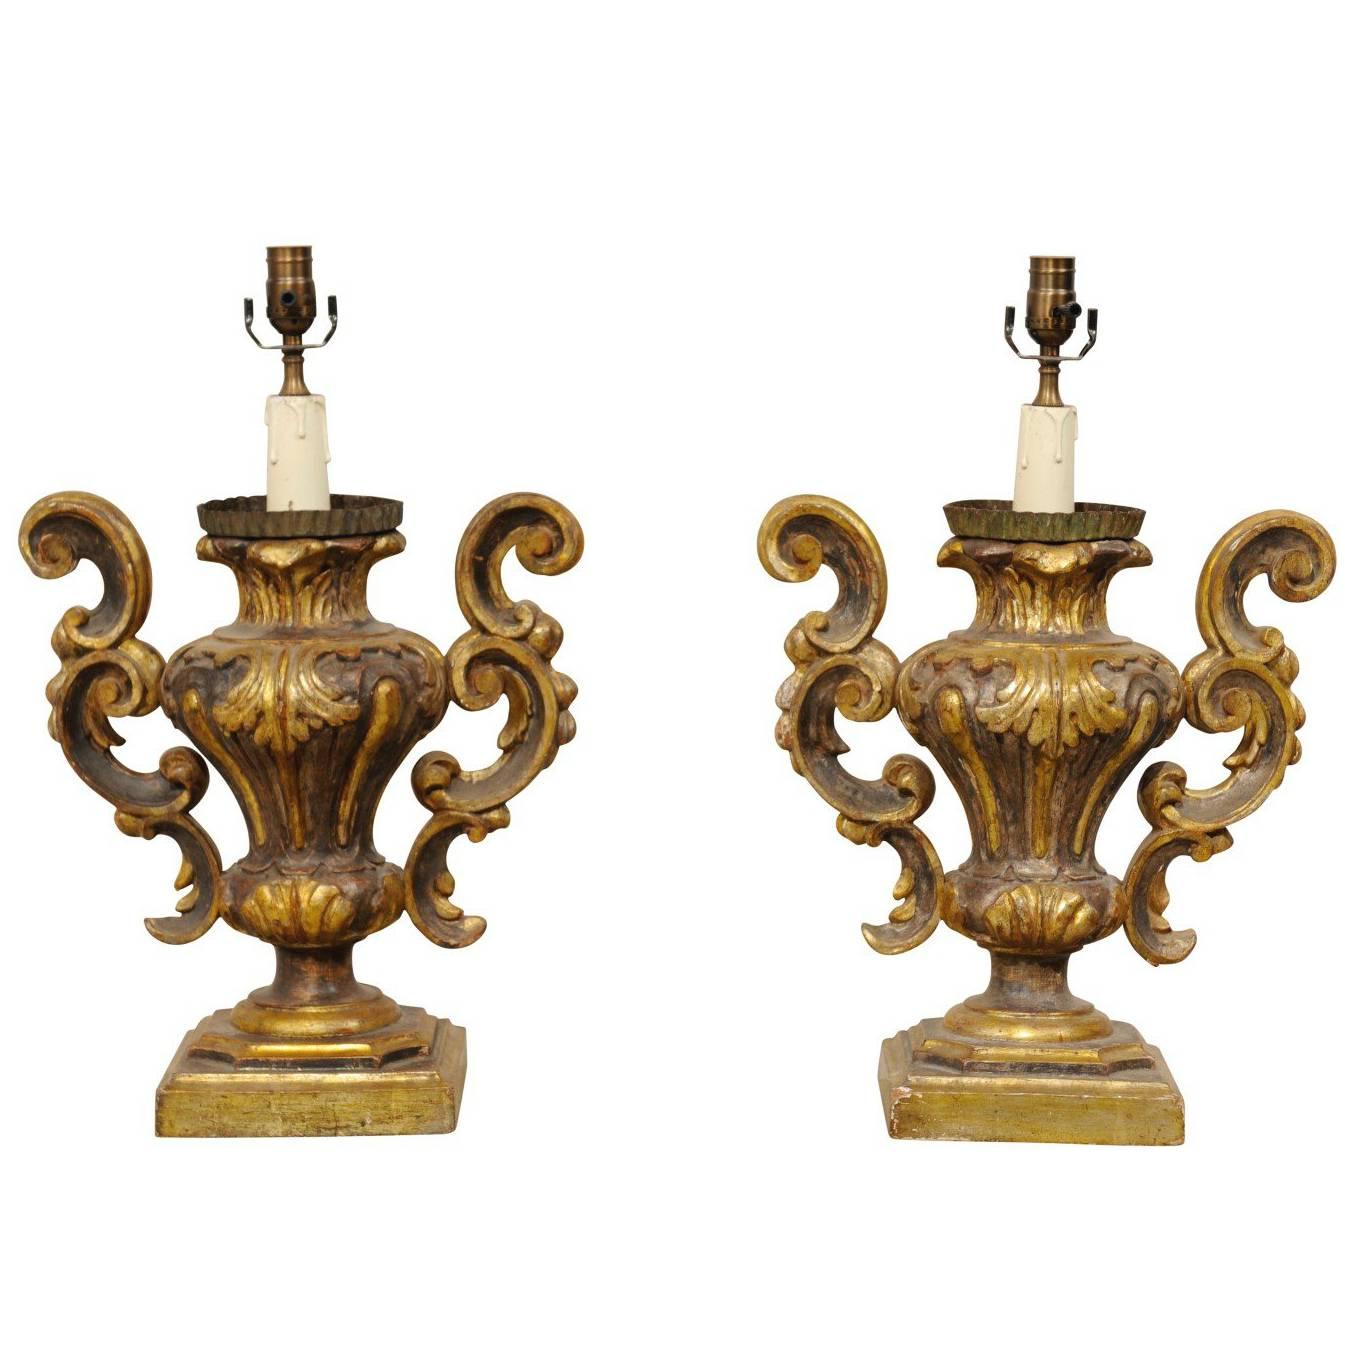 Paire de lampes de bureau italiennes de style rococo dorées avec forme d'urne classique et feuillage